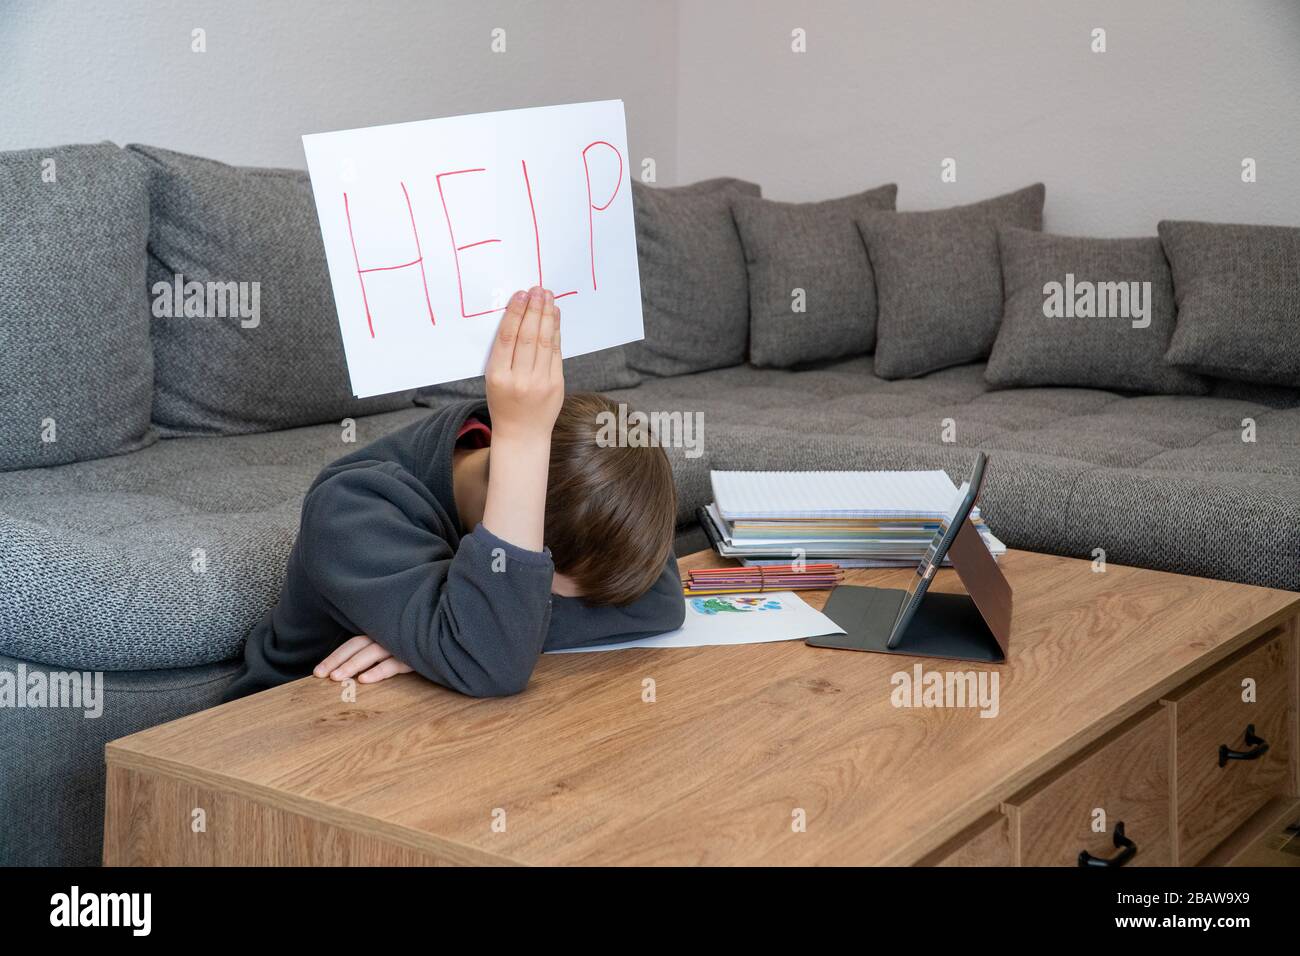 Difficoltà di apprendimento. Triste stanco ragazzo frustrato seduto al tavolo con molti libri e tenendo carta con parola Aiuto. Concetto di istruzione. Foto Stock